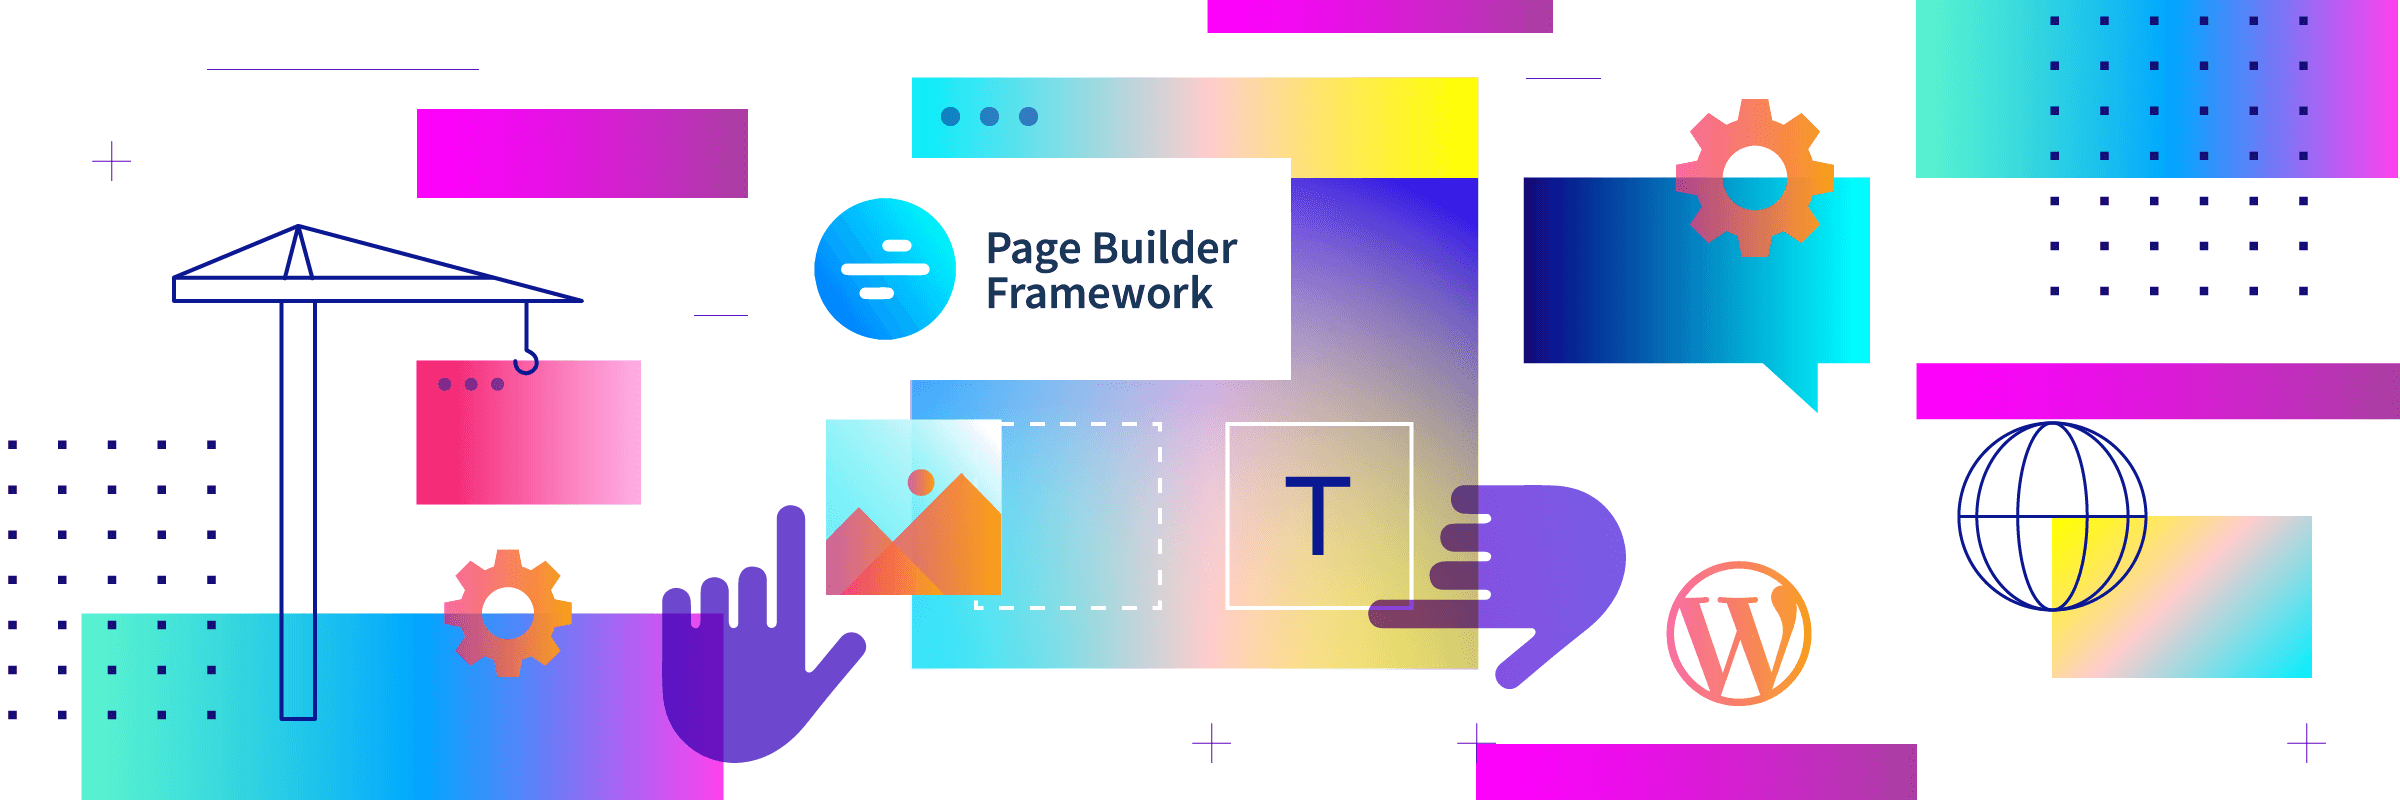 Better Mobile Menu's - Page Builder Framework